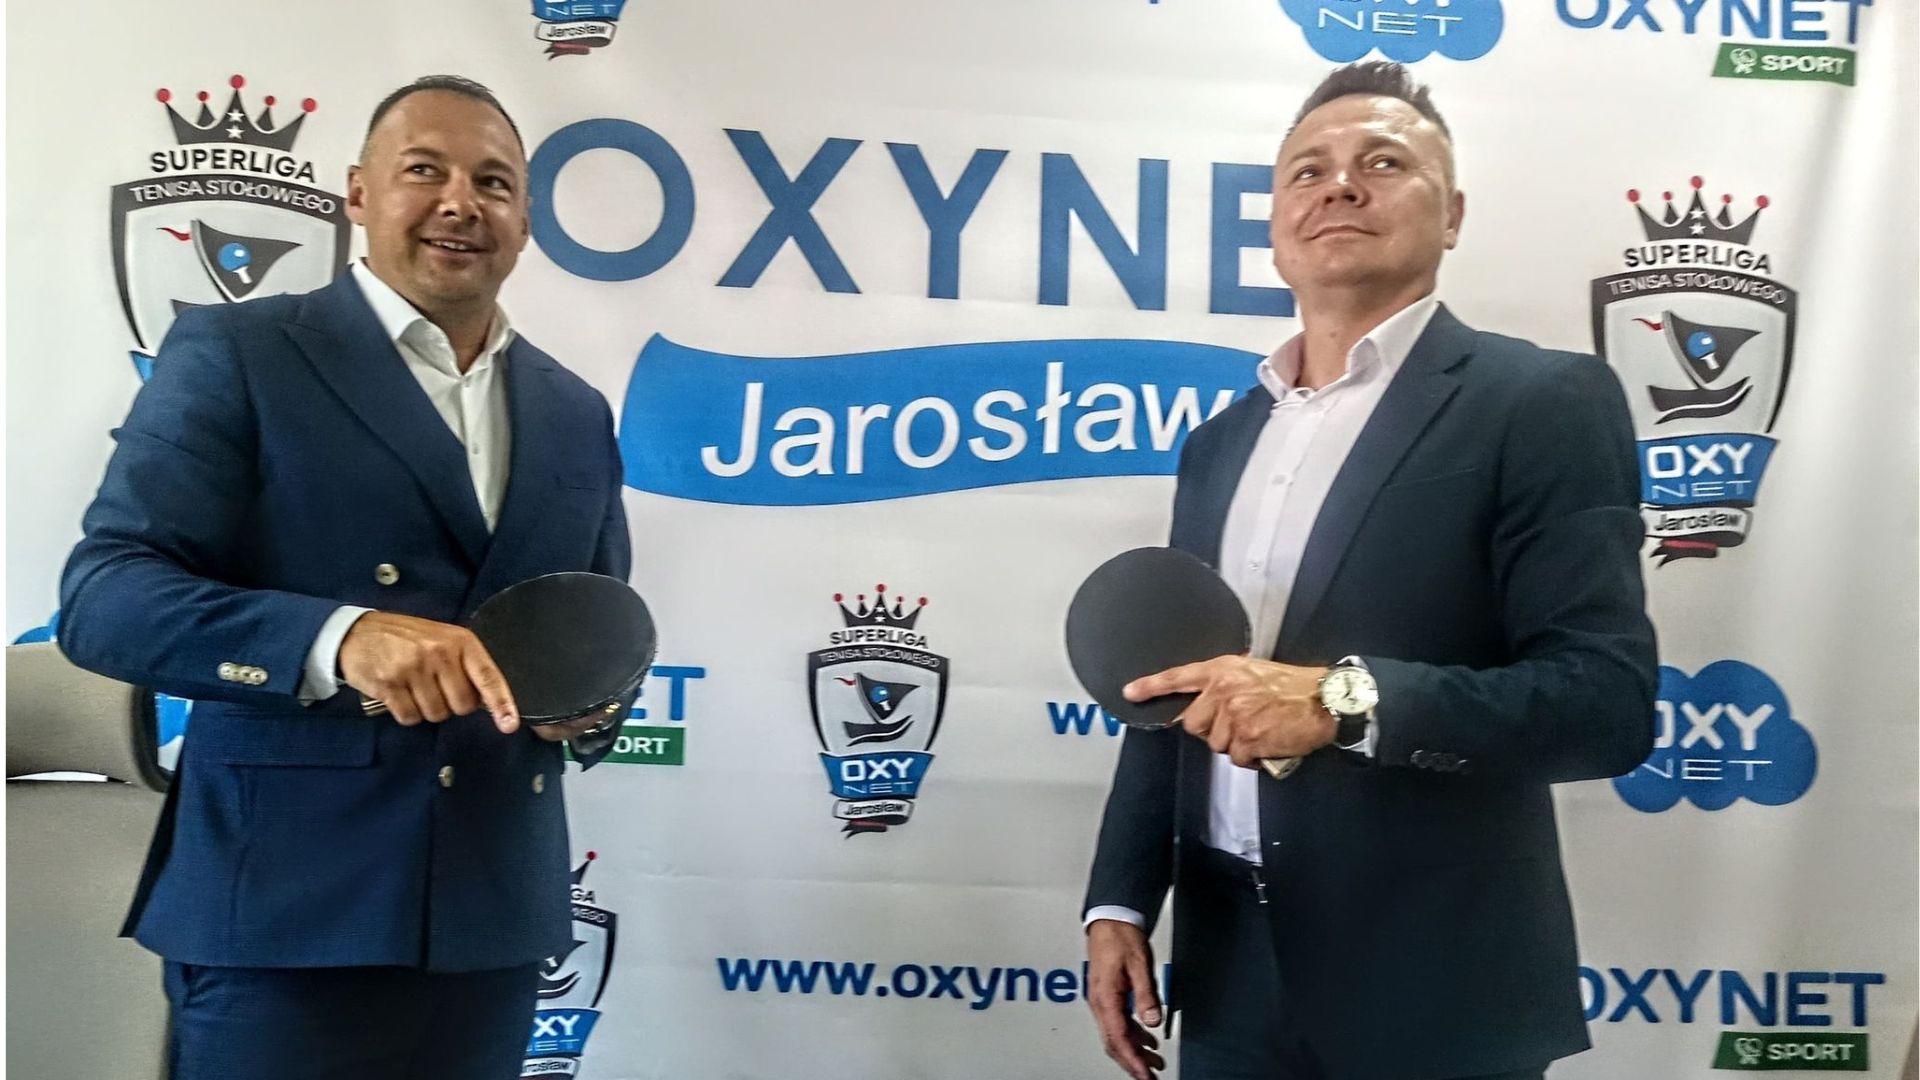 You are currently viewing Firma Oxynet sponsorem tytularnym tenisistów stołowych z Jarosławia